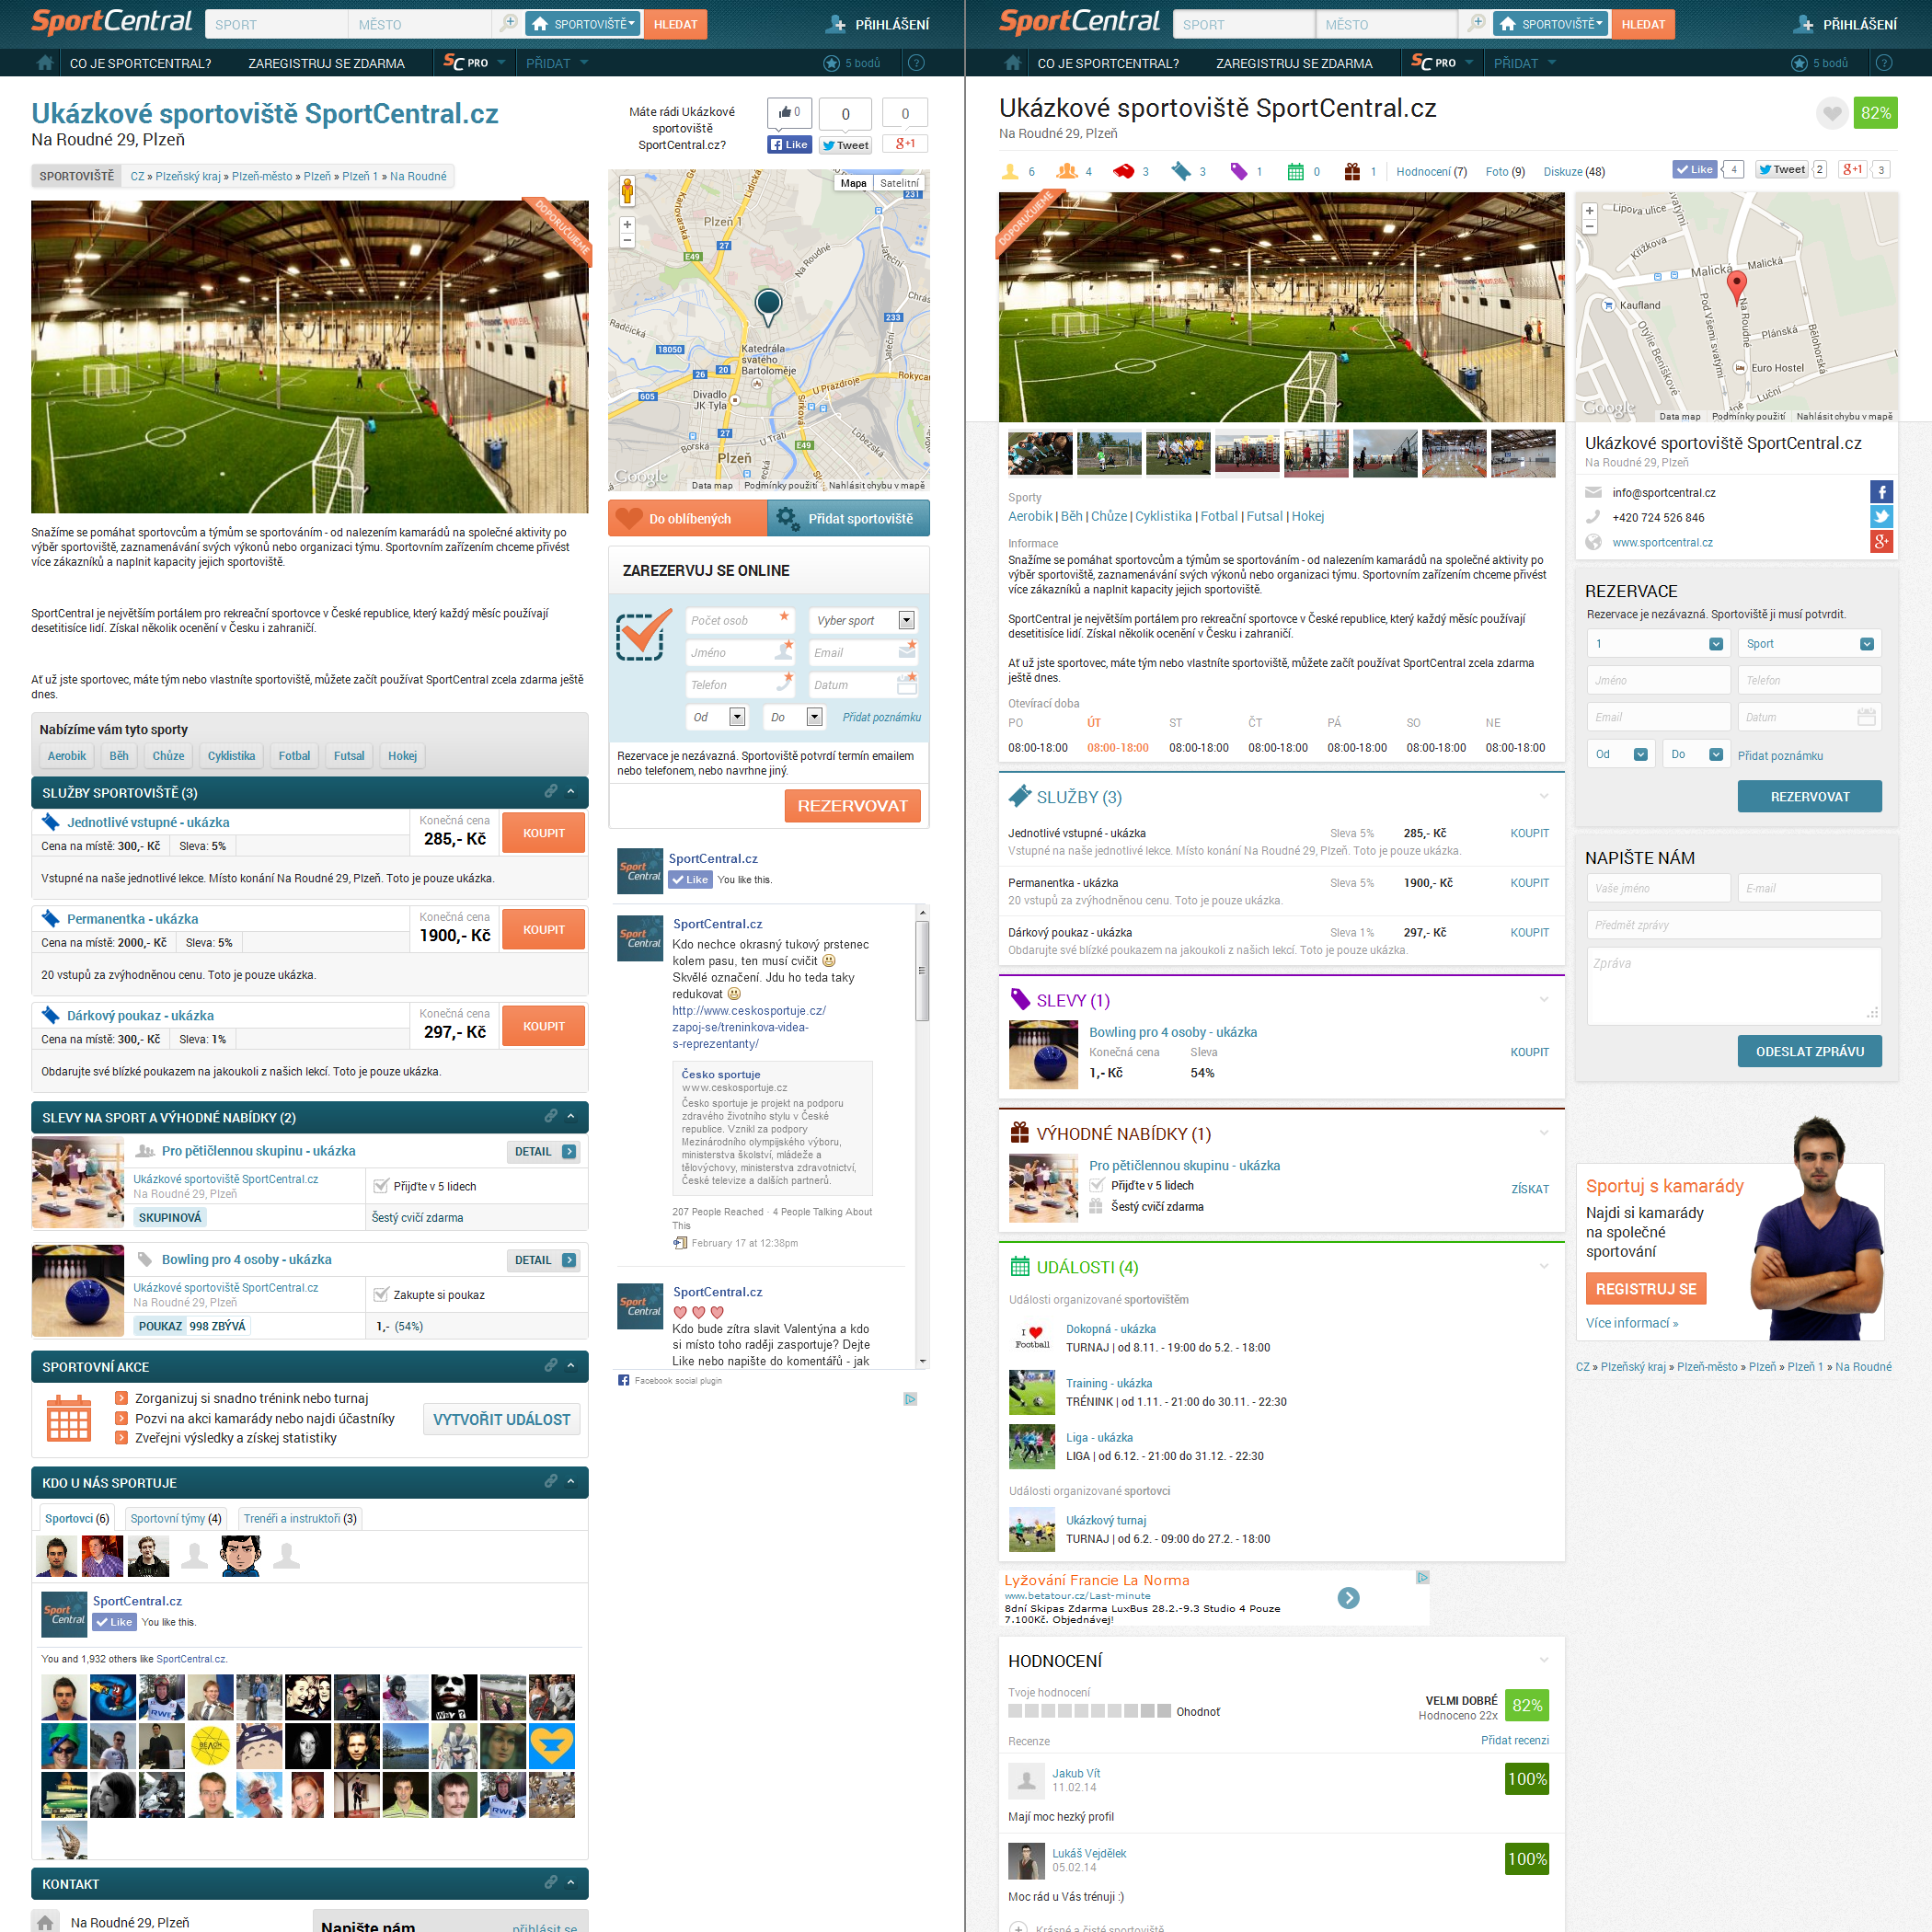 SportCentral redesign profilů sportovních zařízení - srovnání